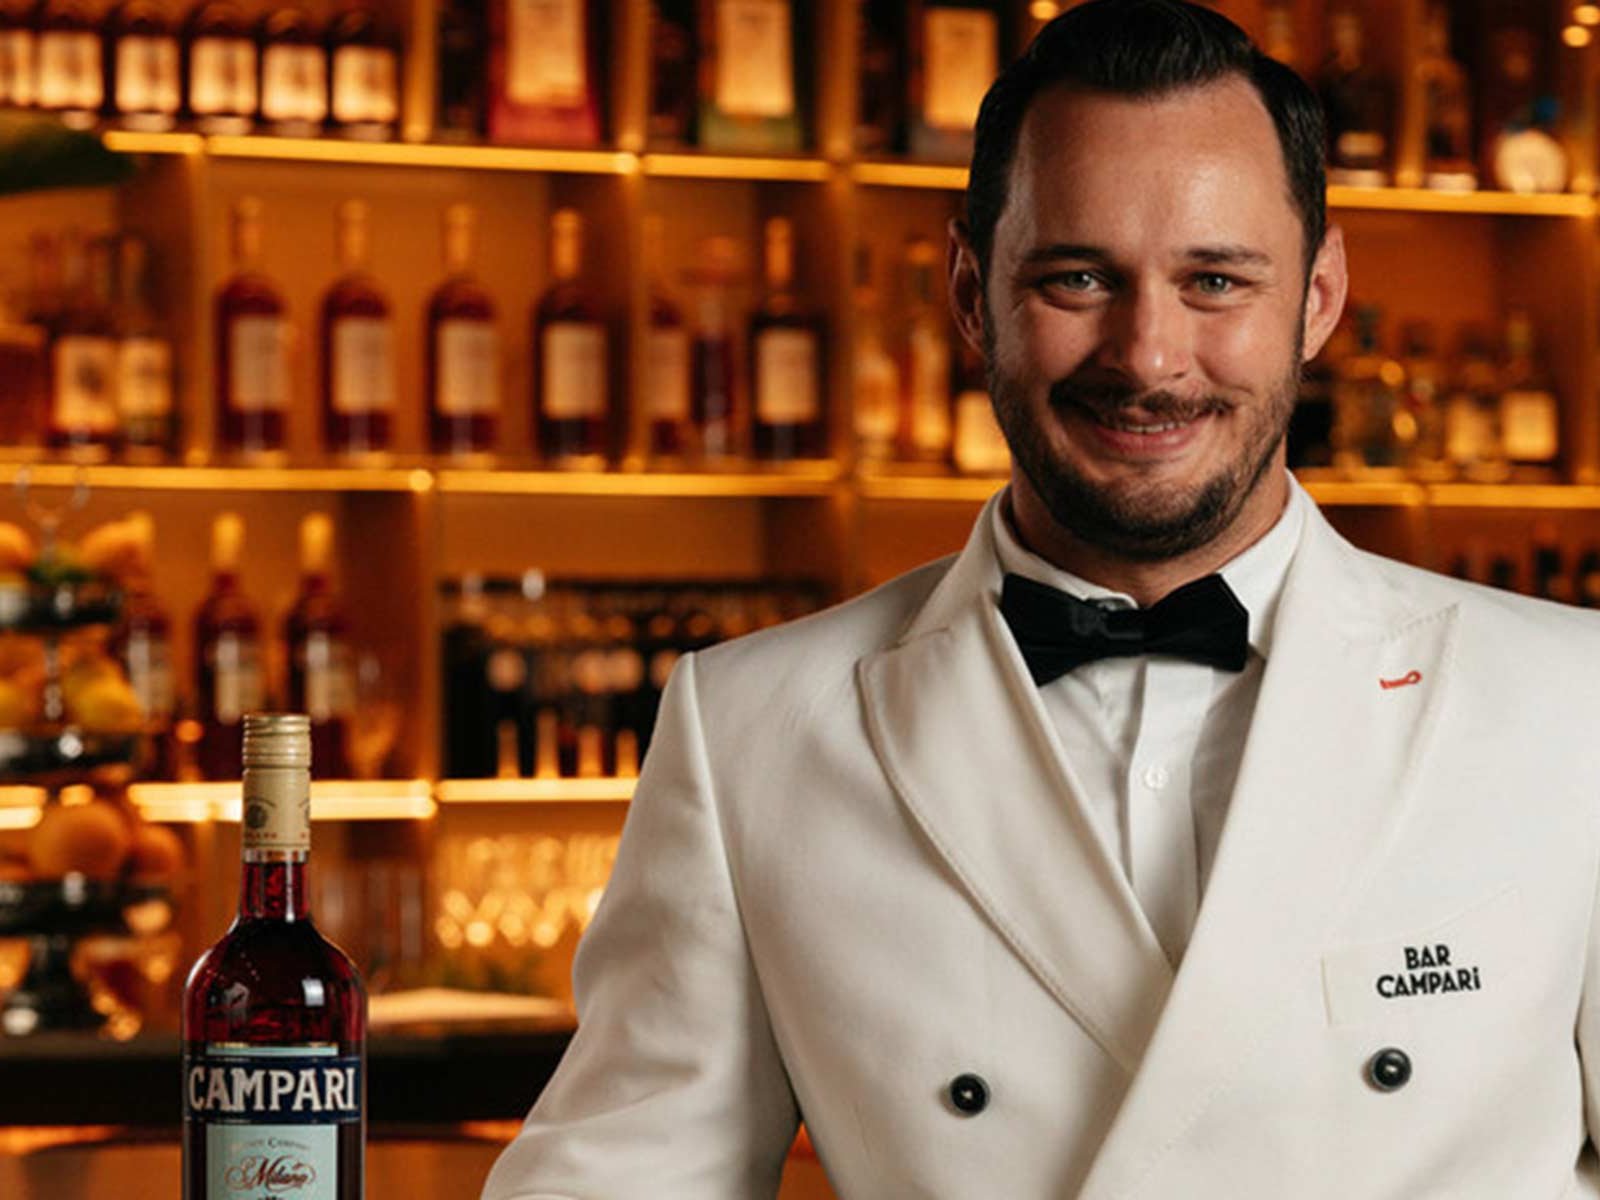 Barchef David Penker hat für die Viennale einen eigenen Signature-Cocktail kreiert.